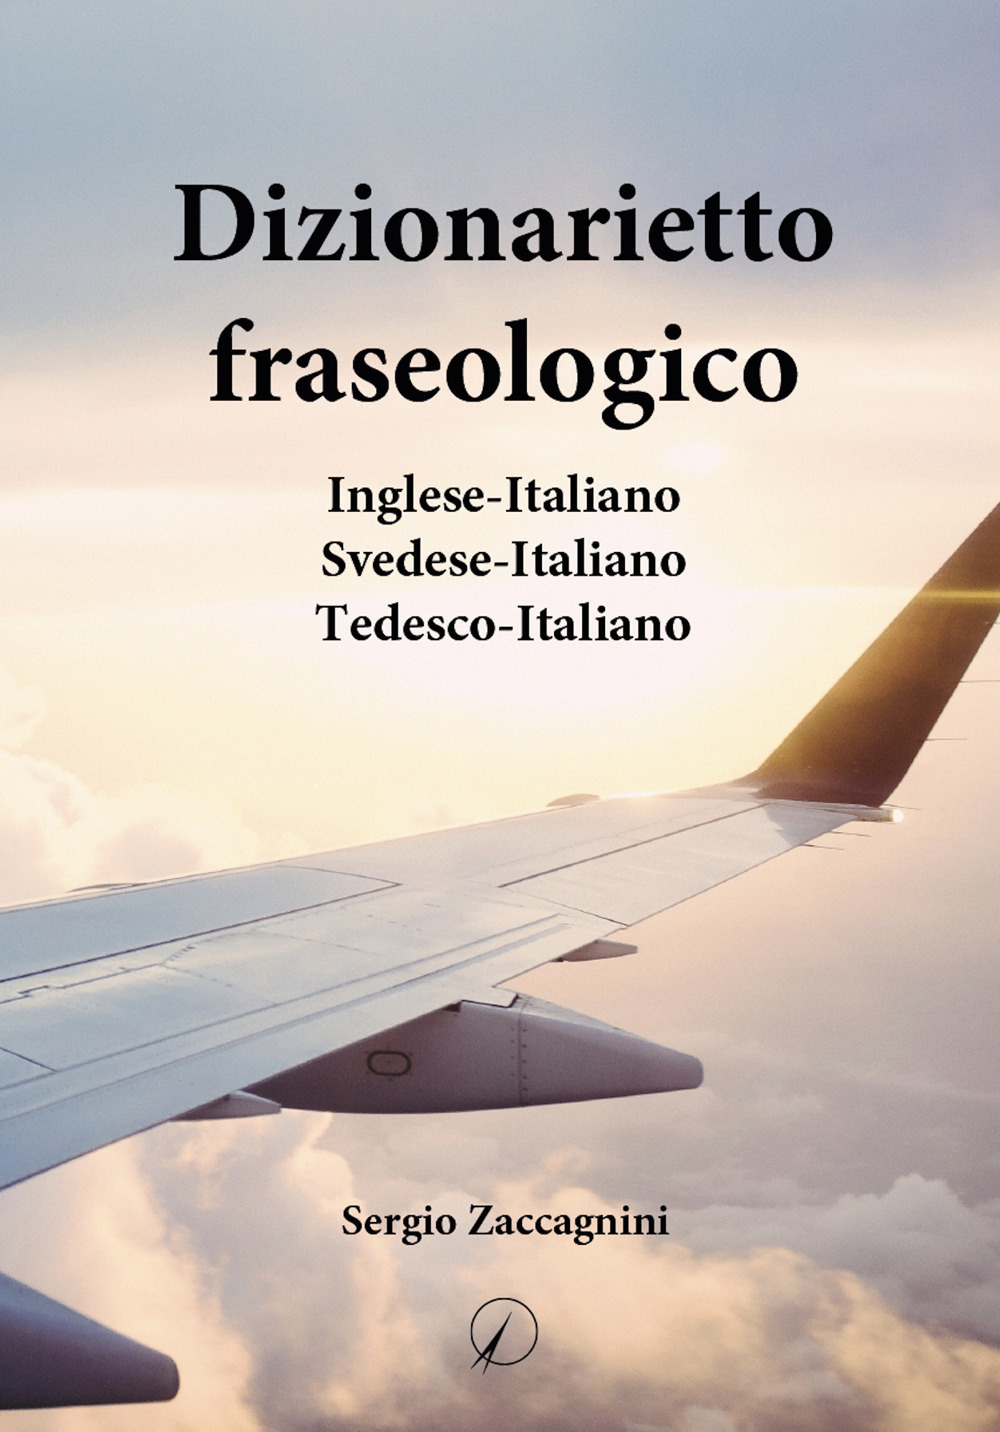 Dizionarietto fraseologico. Inglese-Italiano Svedese-Italiano Tedesco-Italiano